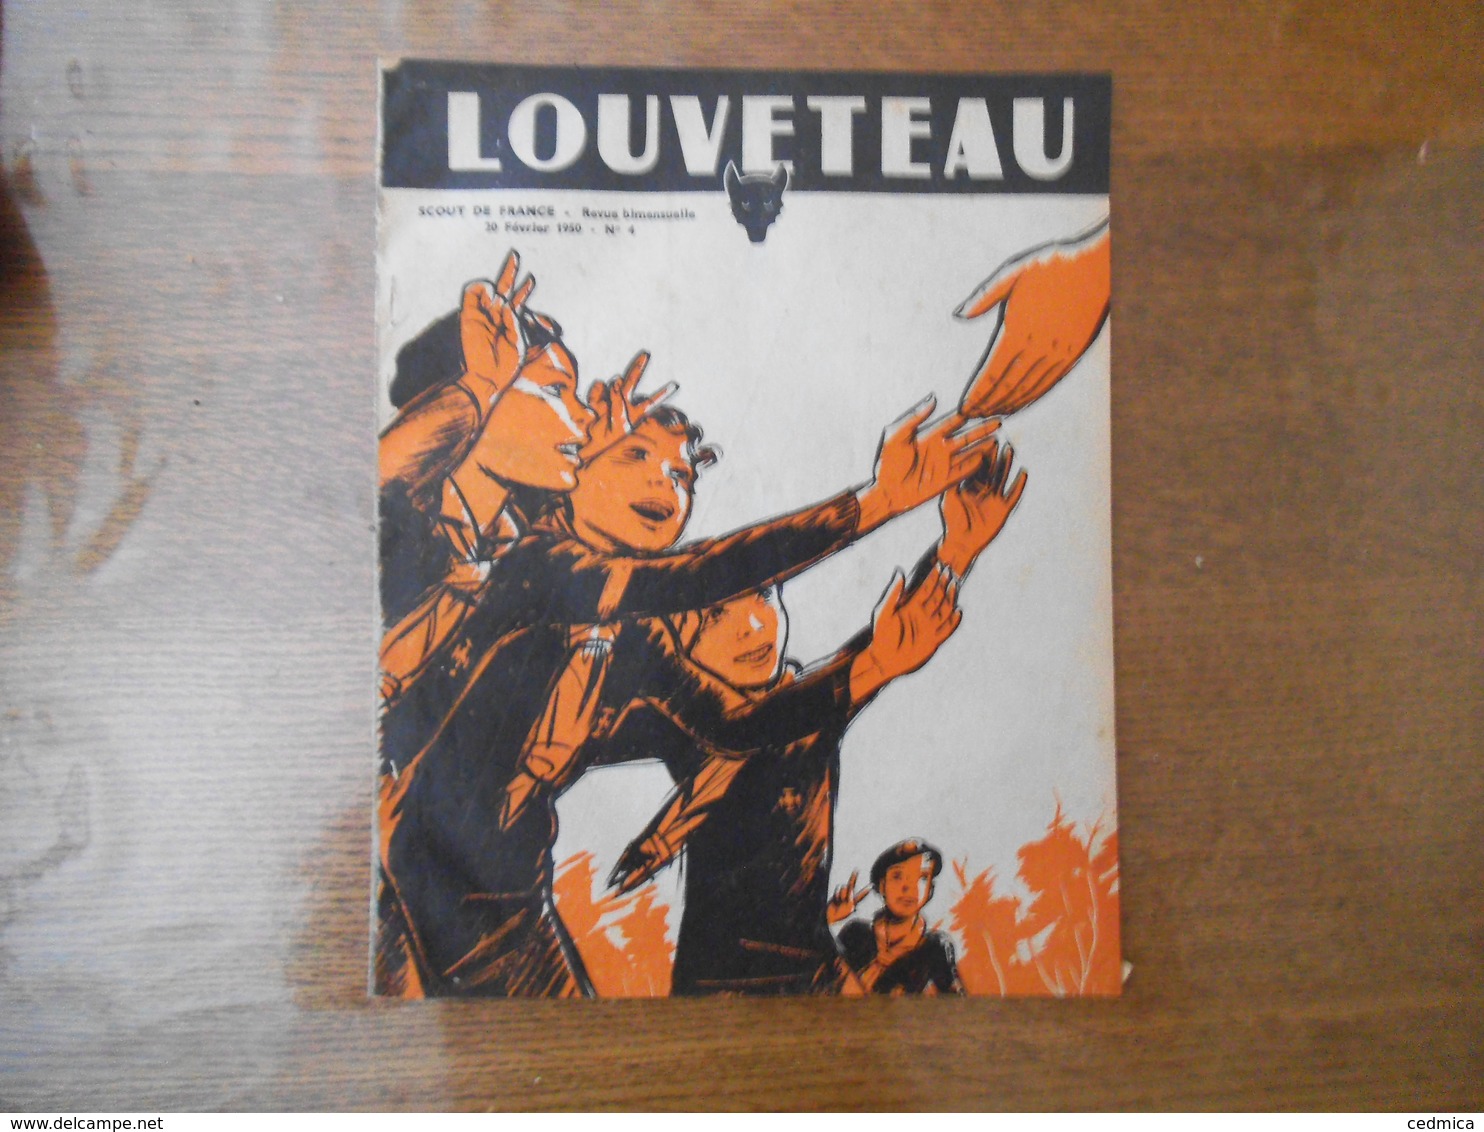 LOUVETEAU SCOUT DE FRANCE 20 FEVRIER 1950 N° 4 - Scoutisme